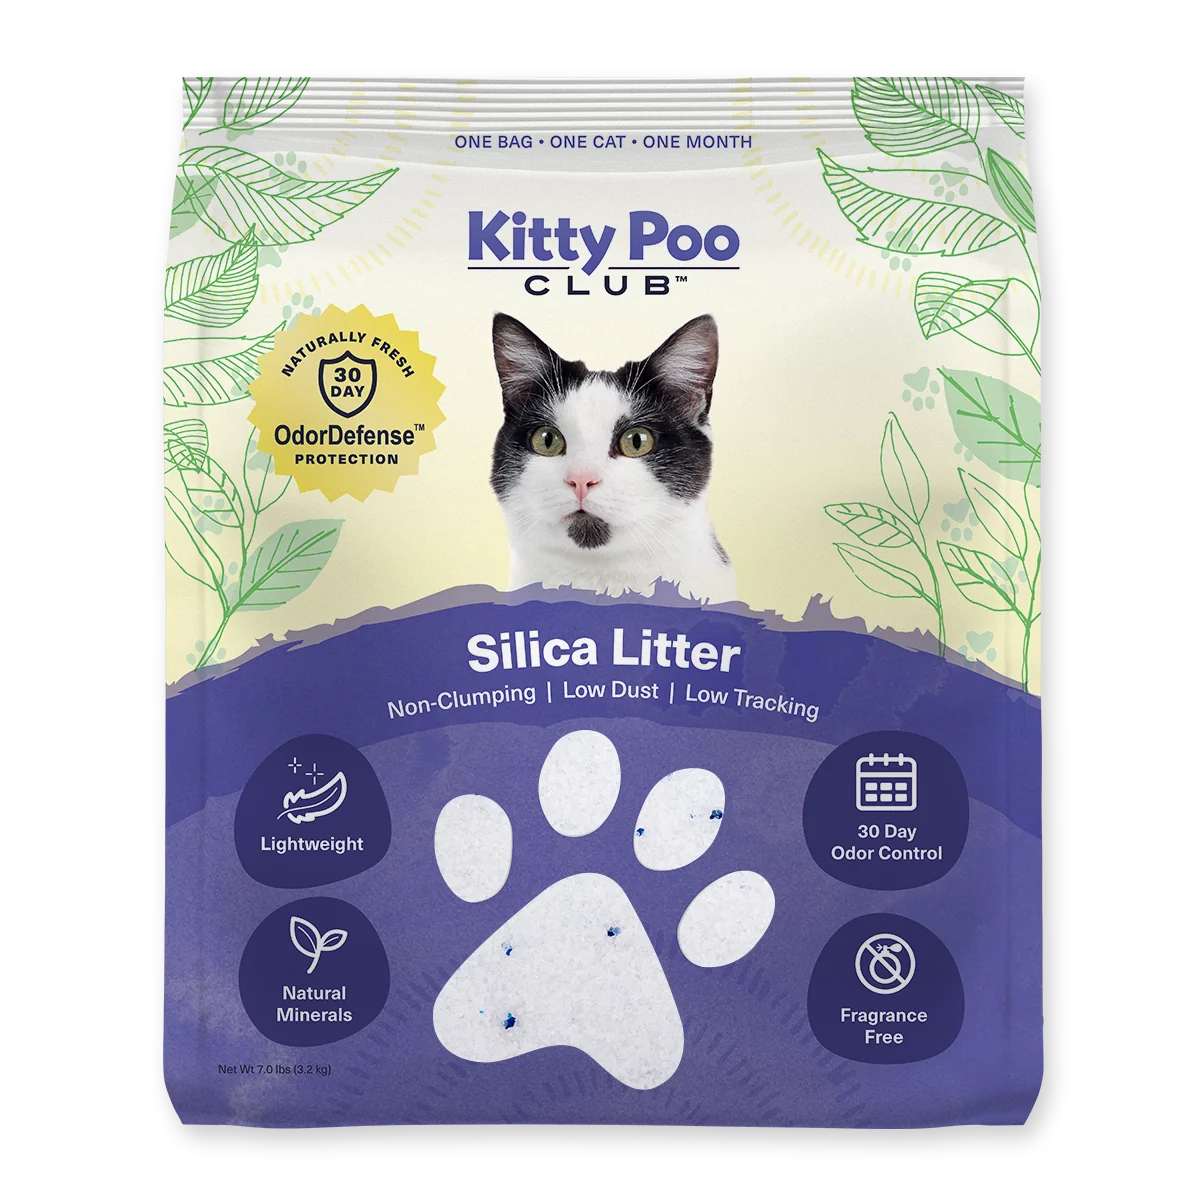 KittyPoo Club Cat Litter Bag